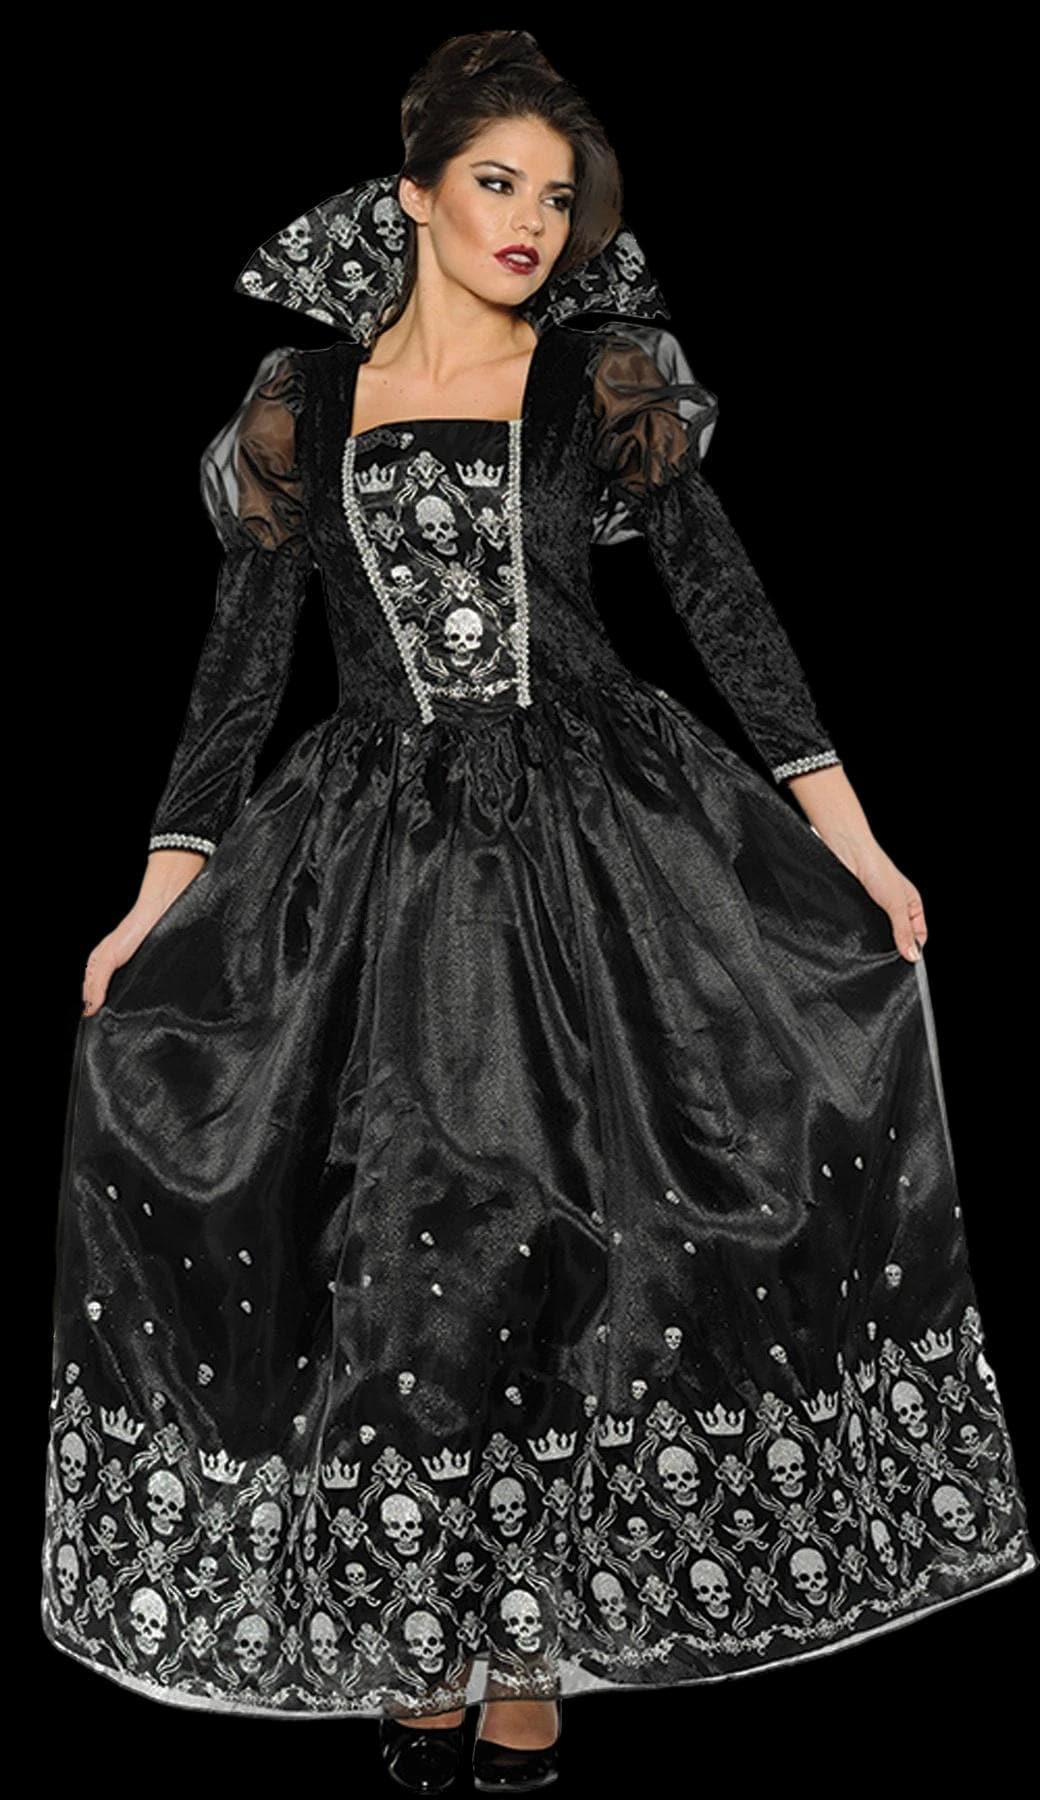 "Dark Queen" Women's Halloween Costume (Adult Size)